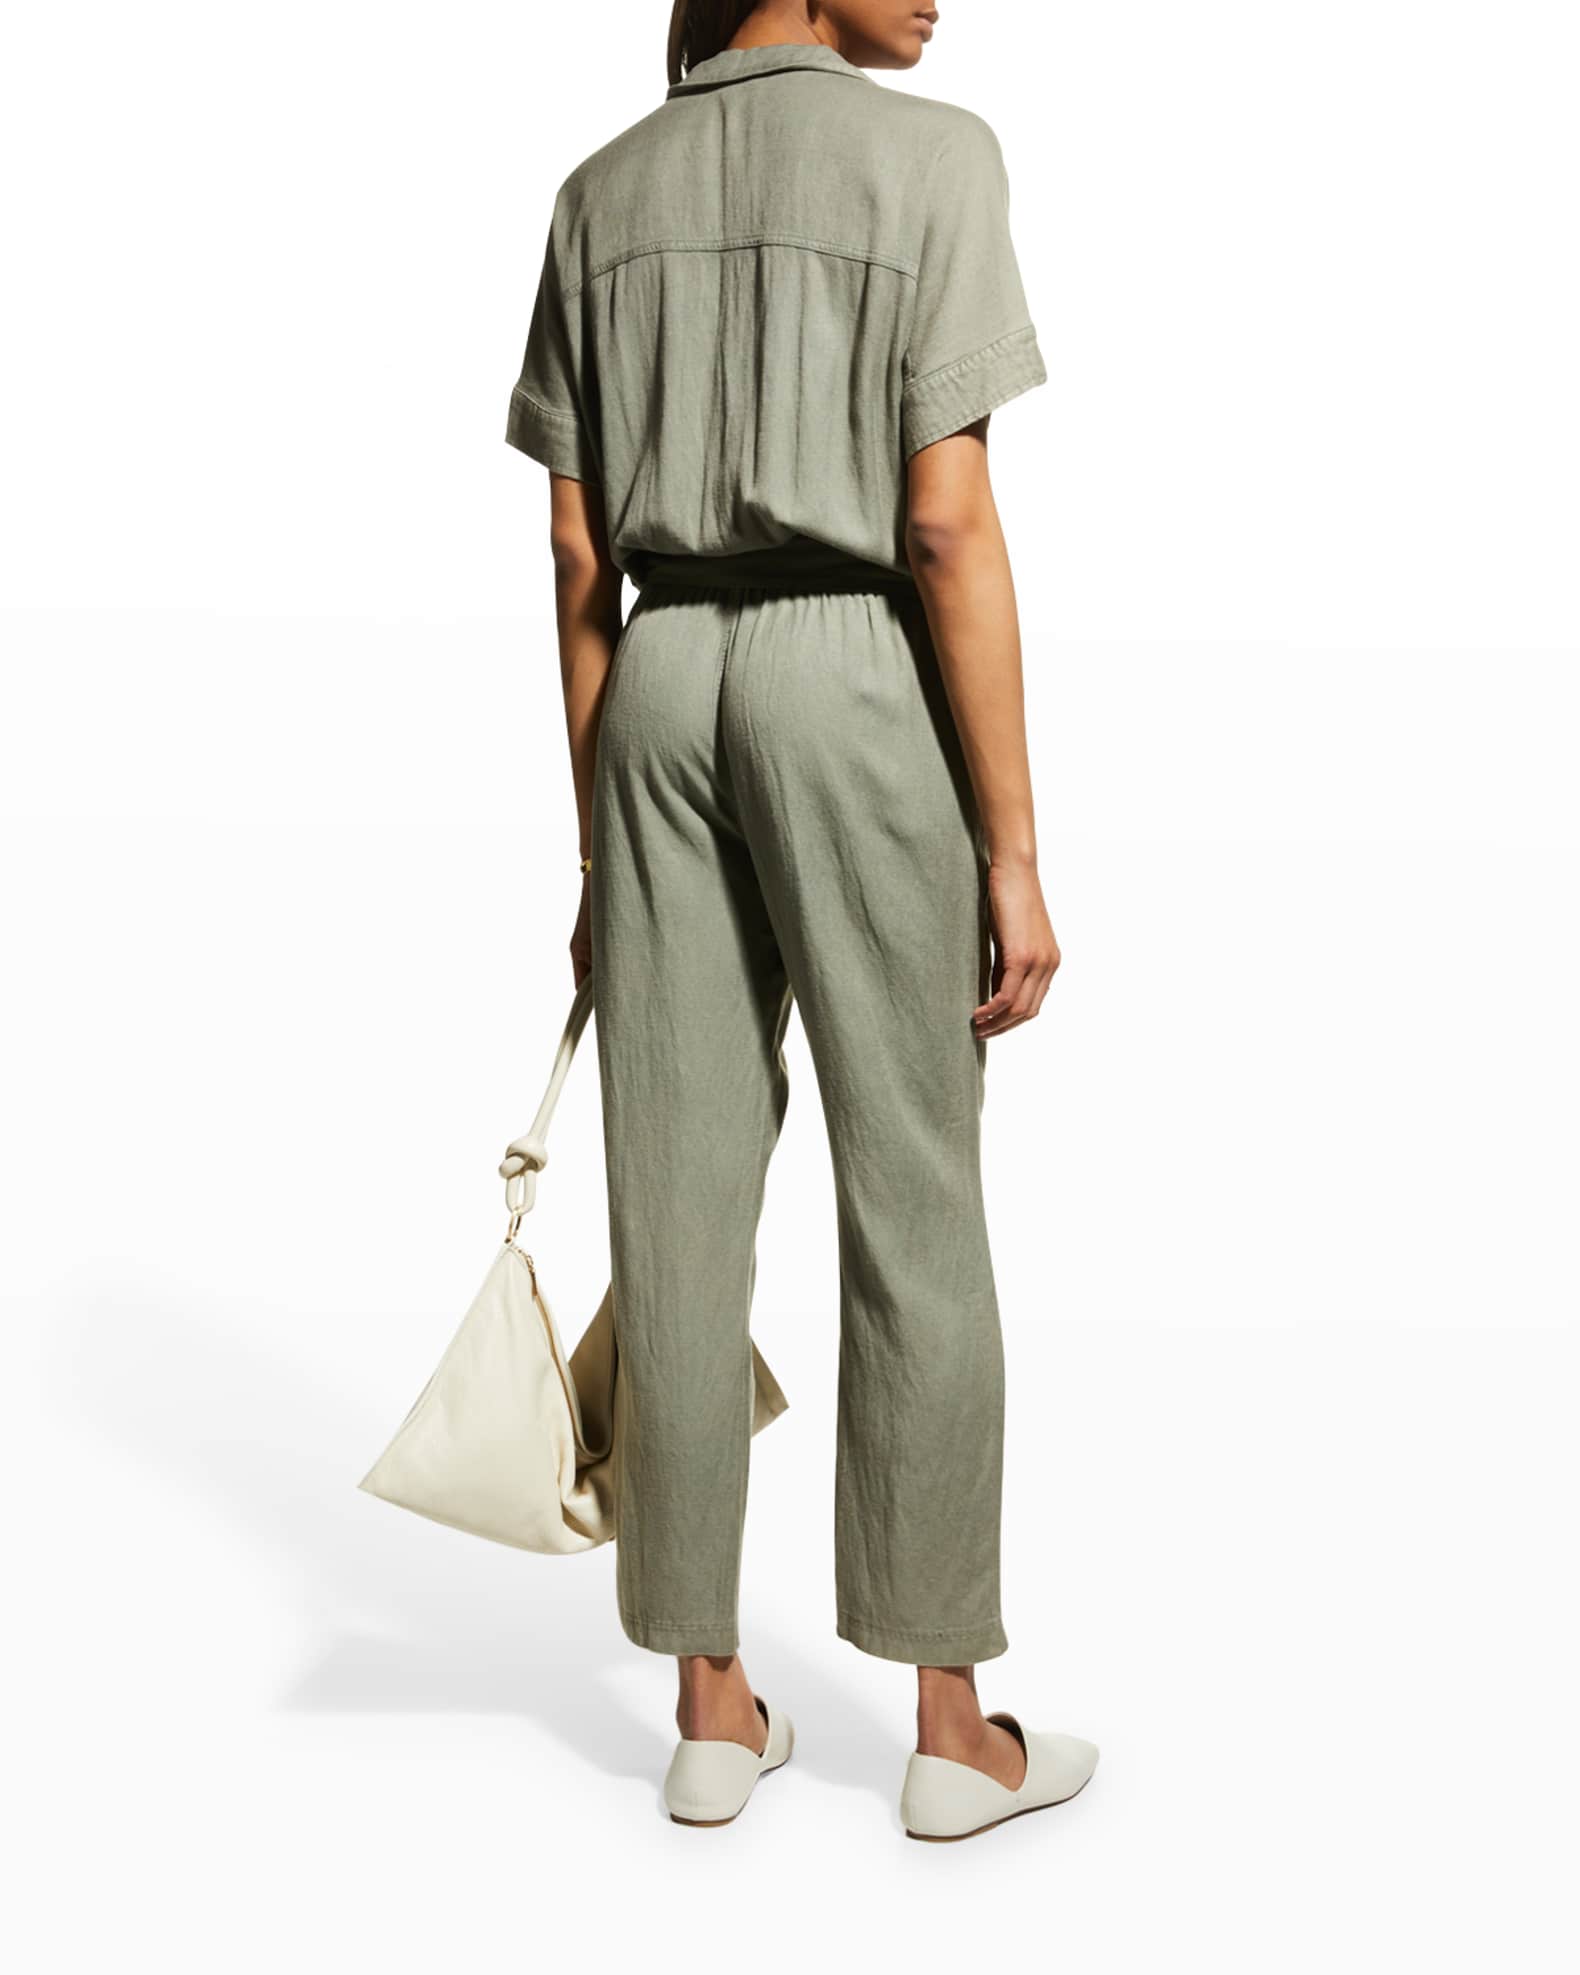 Splendid Soleil Self-Tie Linen Jumpsuit | Neiman Marcus